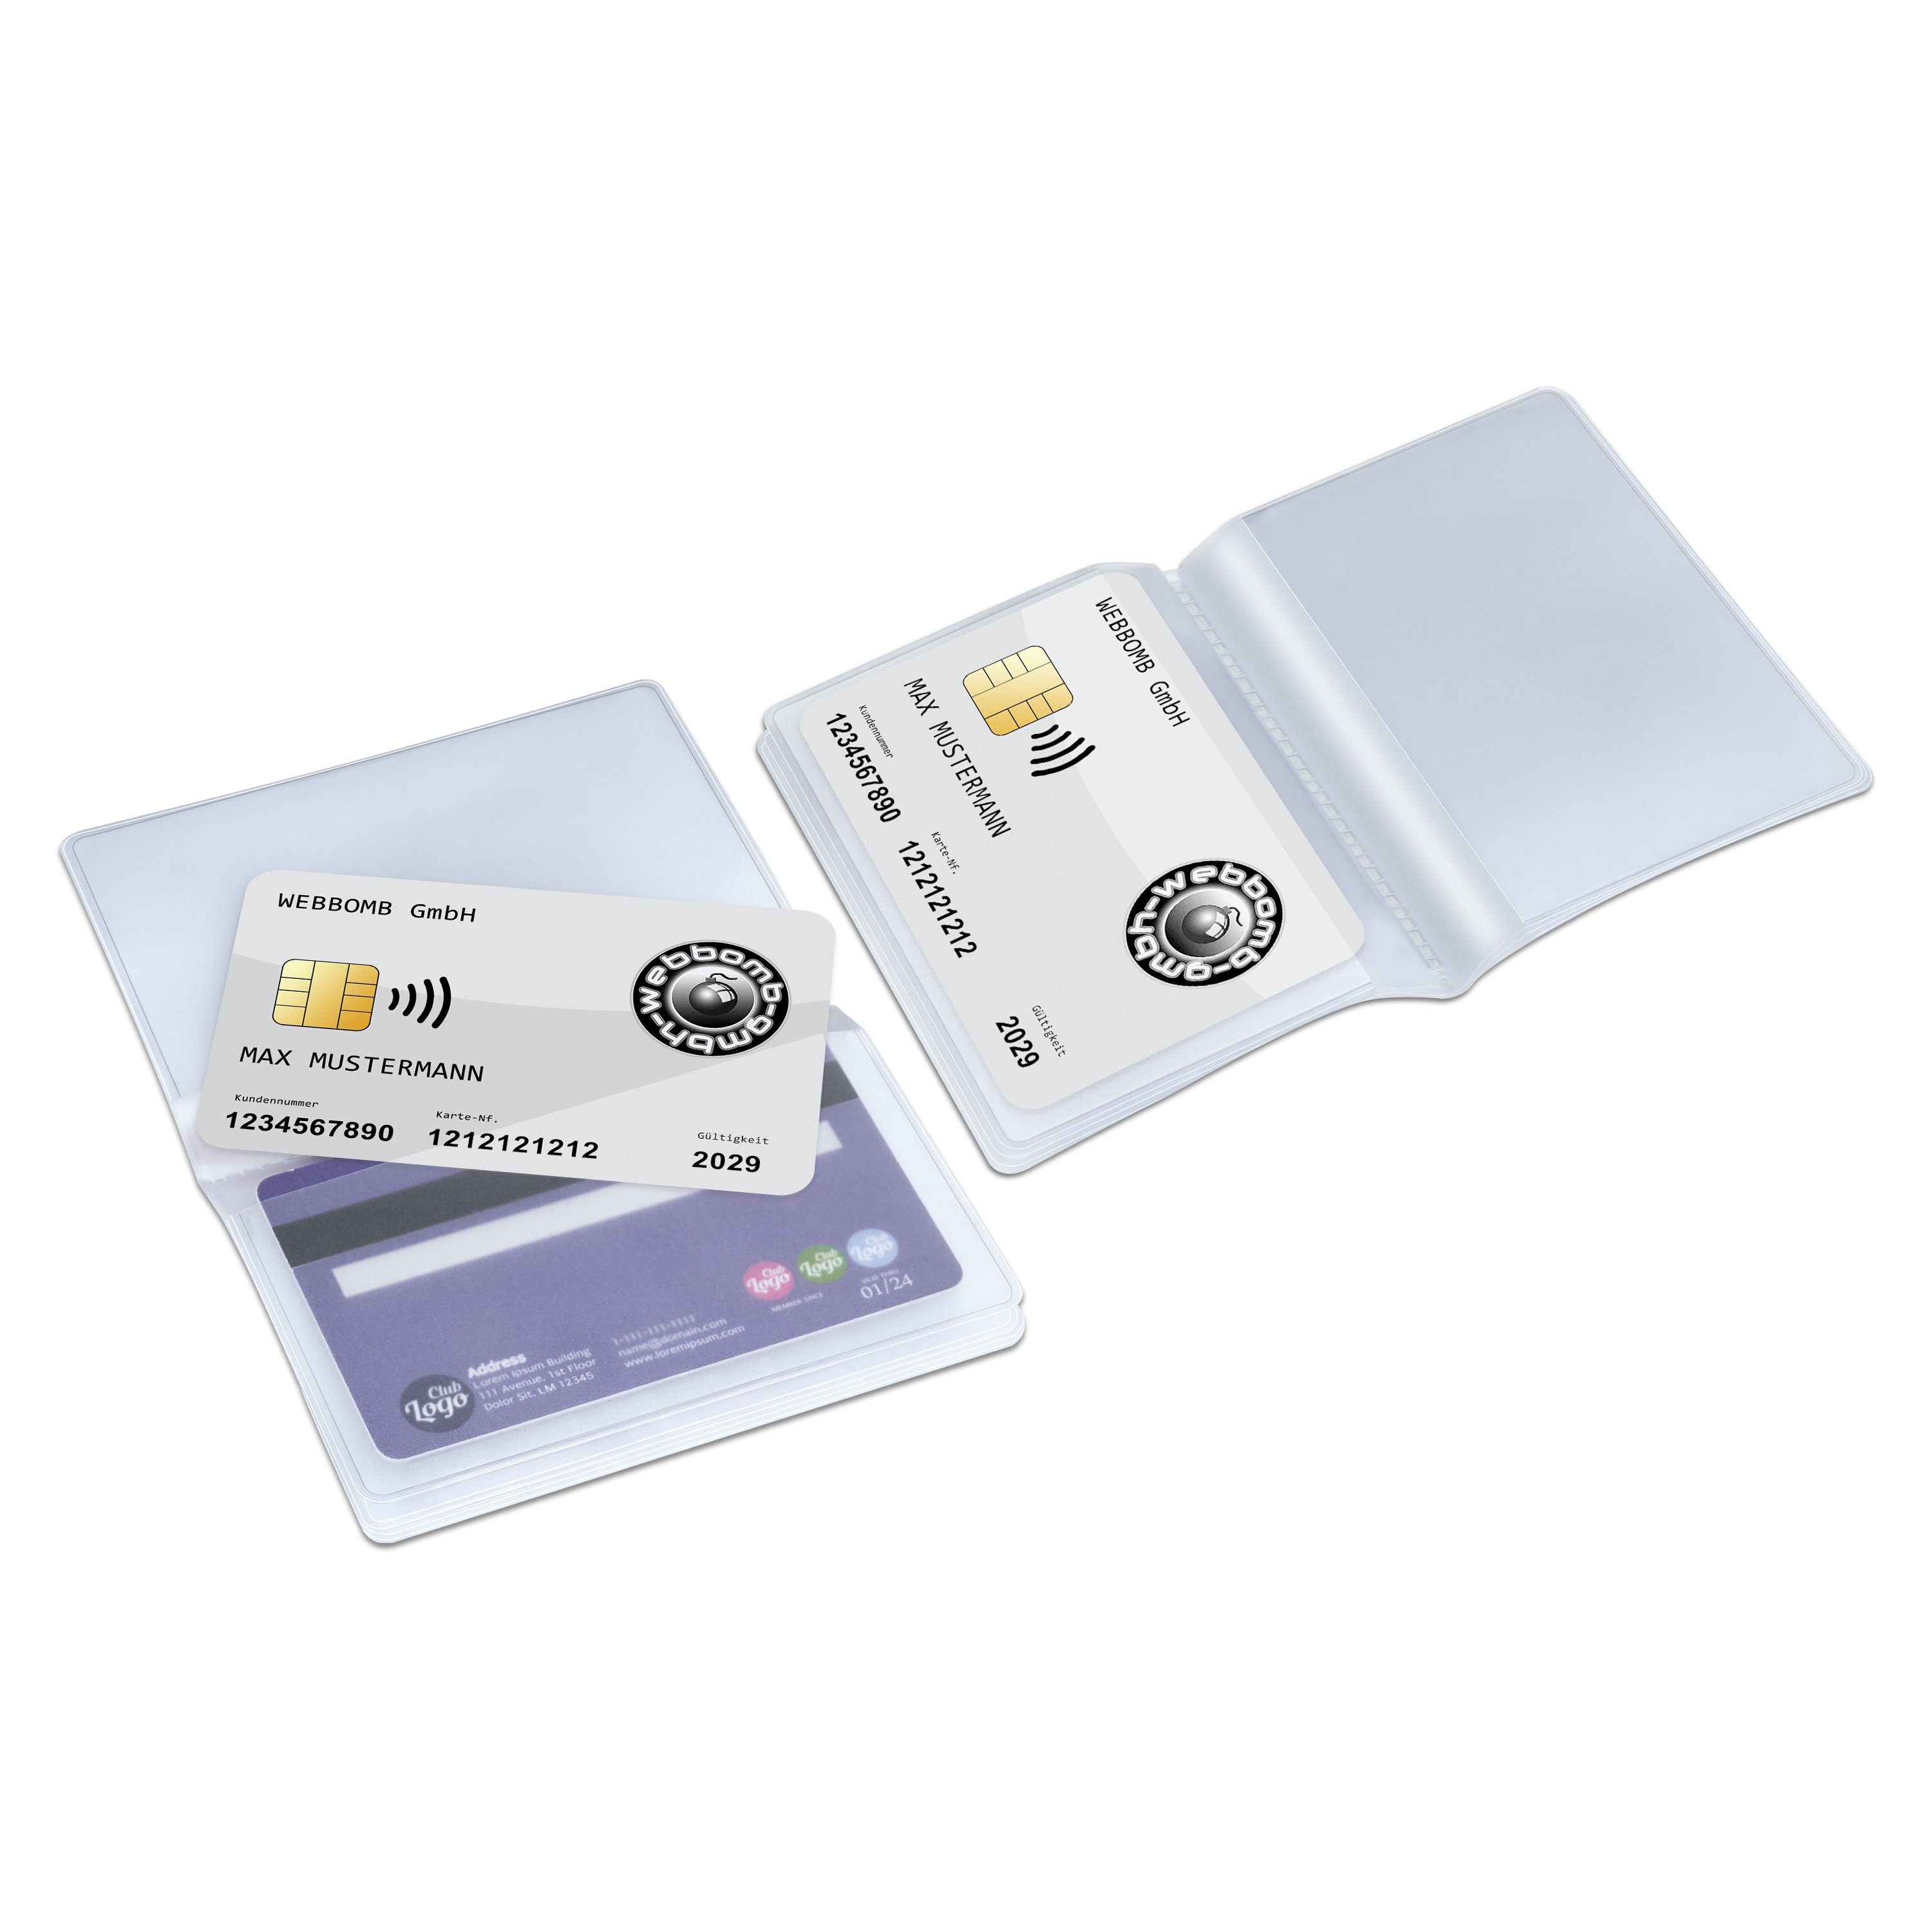 Wallet Etui 10fach Brieftaschen WEBBOMB Einsatz Kartenhalter transparent Kartenetui